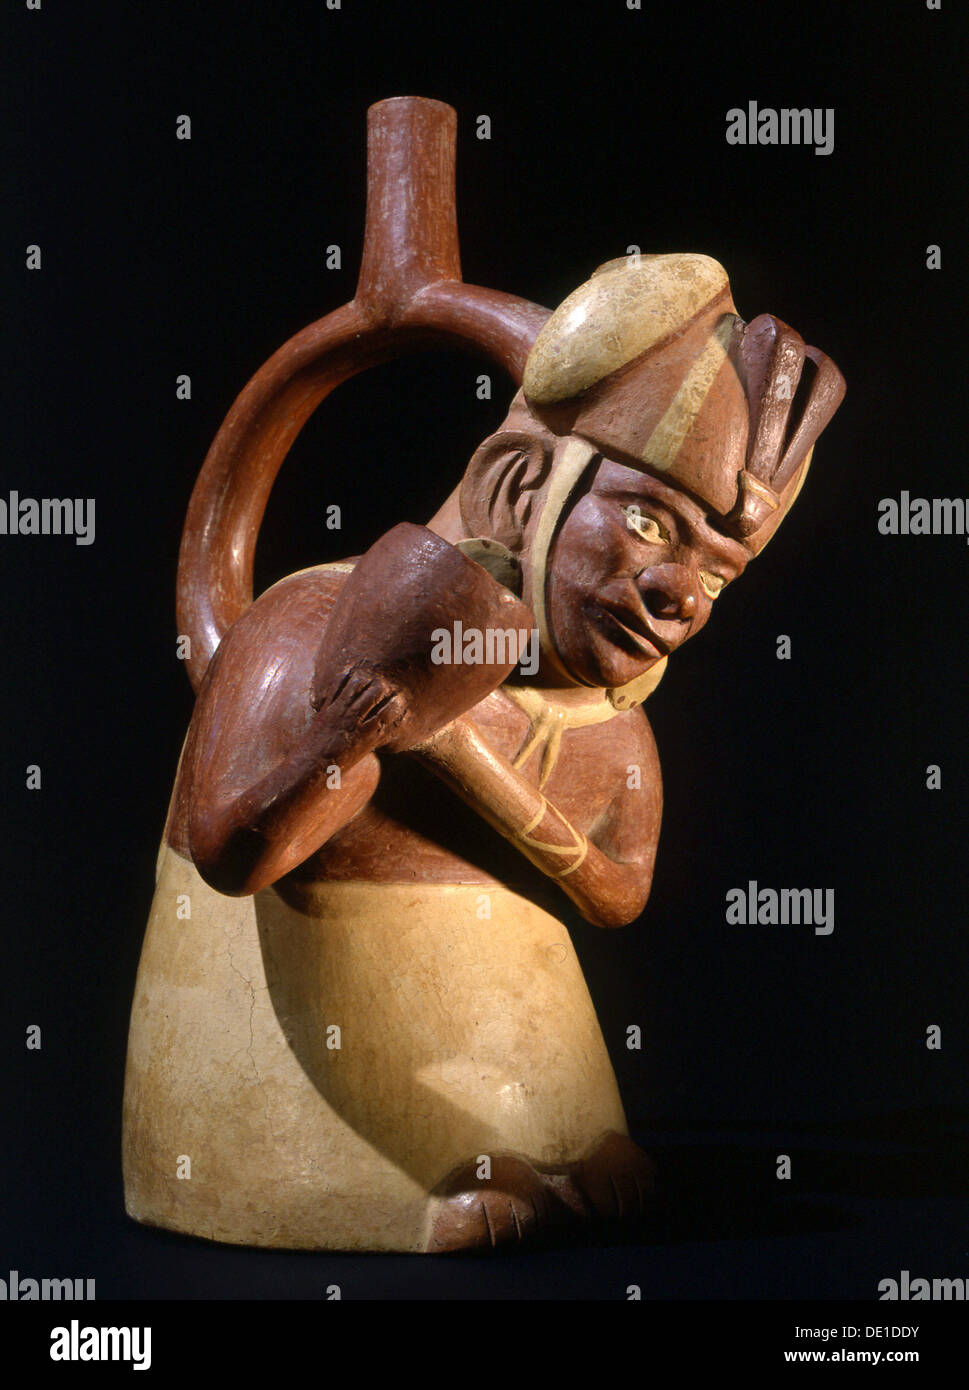 Estribo-spouted jar retrato Mochica representando una noble derramando agua o chicha cerveza, probablemente como una libación asociados con rituales de fertilidad. Foto de stock